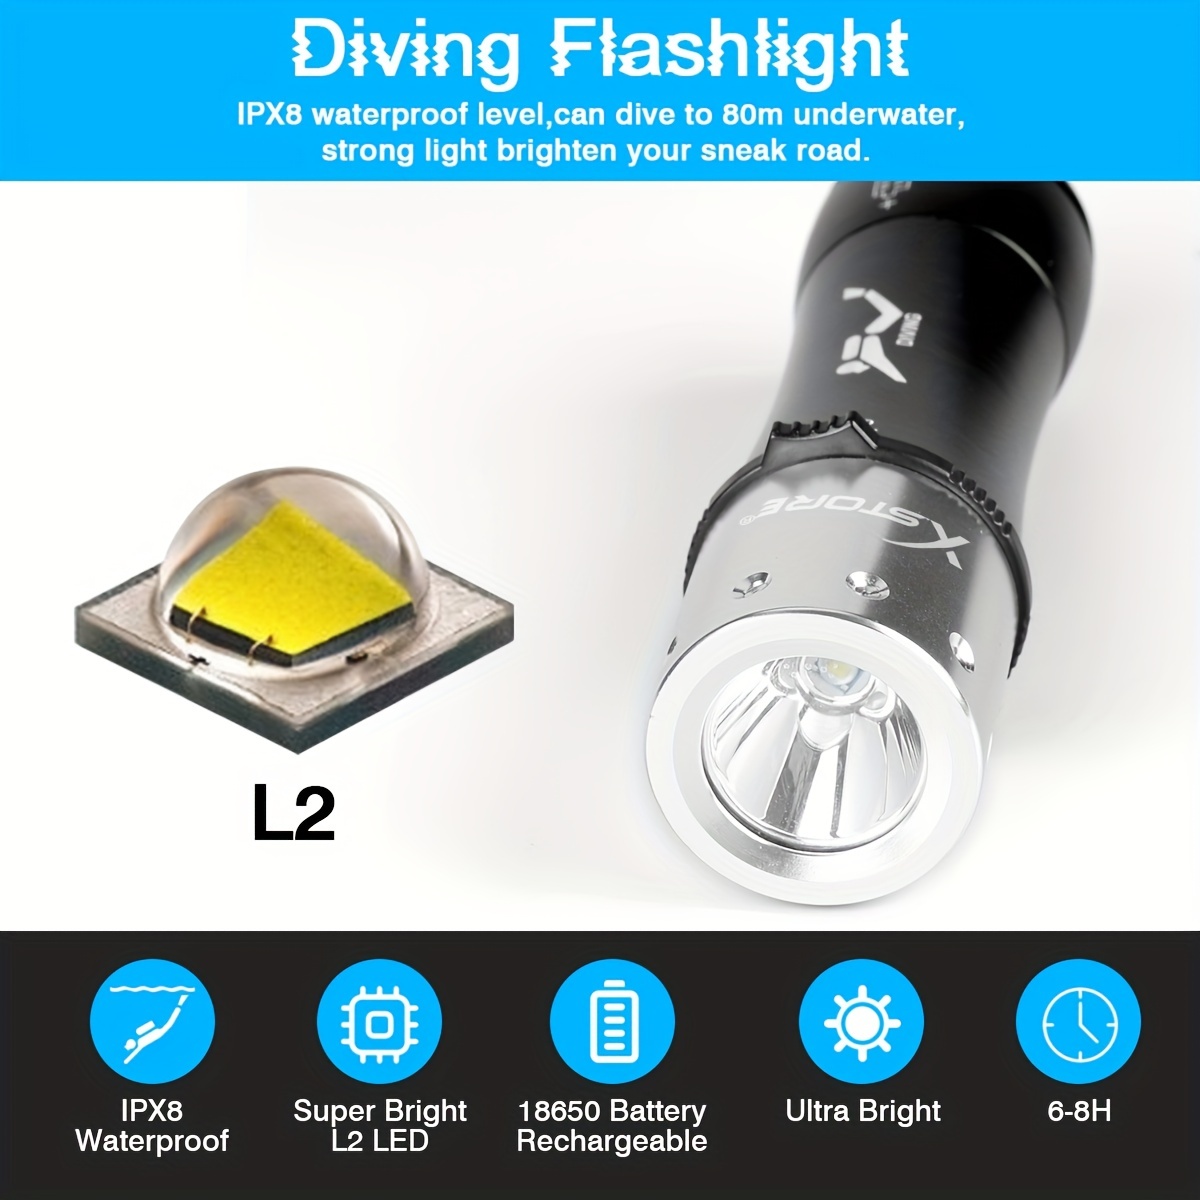 Luz de buceo súper brillante, linterna de buceo subacuática impermeable,  linterna de buceo nocturno con batería recargable y cargador